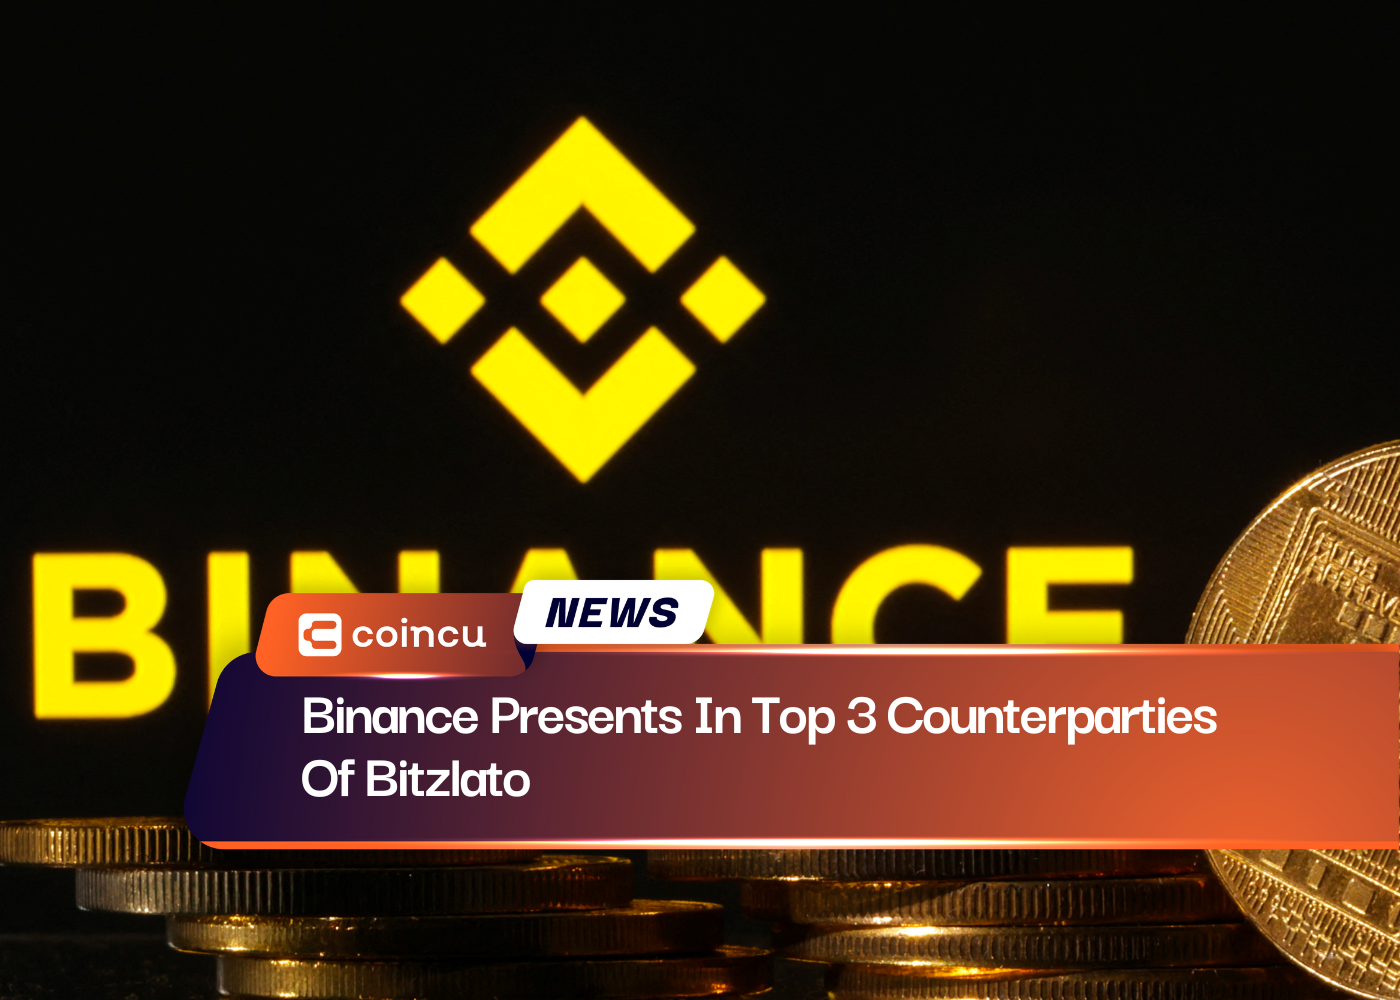 Binance Presents In Top 3 Counterparties Of Bitzlato